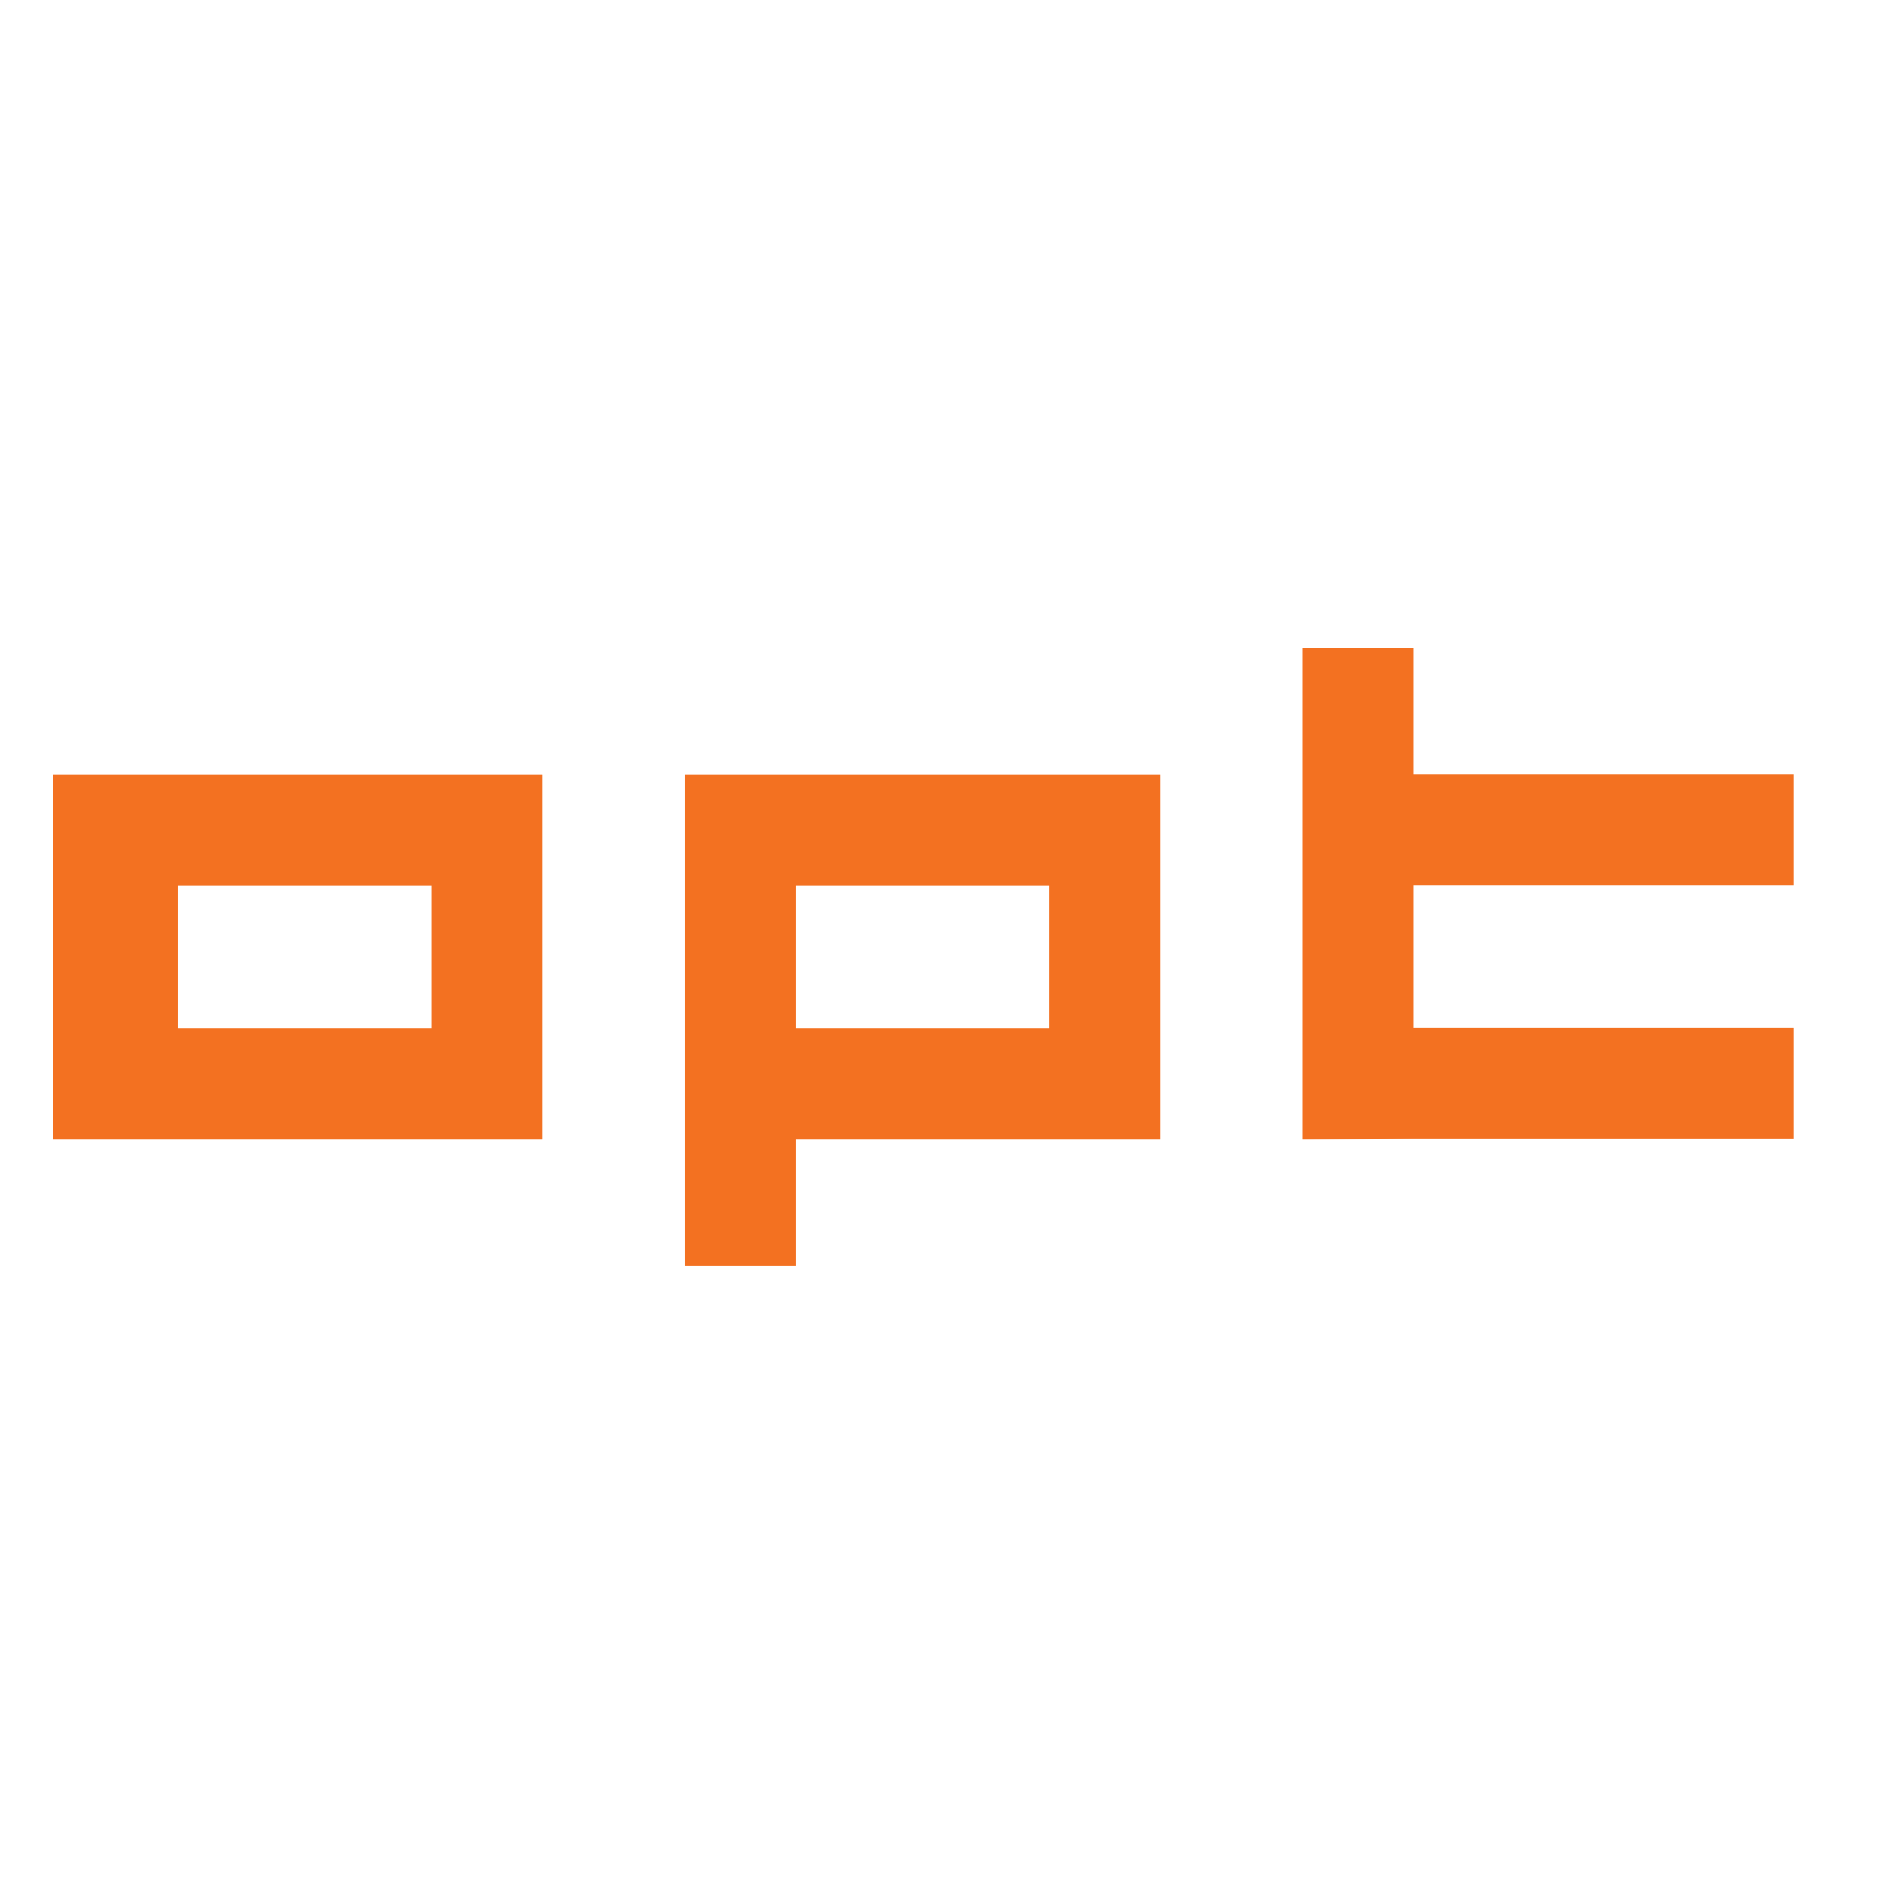 OPT - Optimização e Planeamento de Transportes, S.A. - Logo